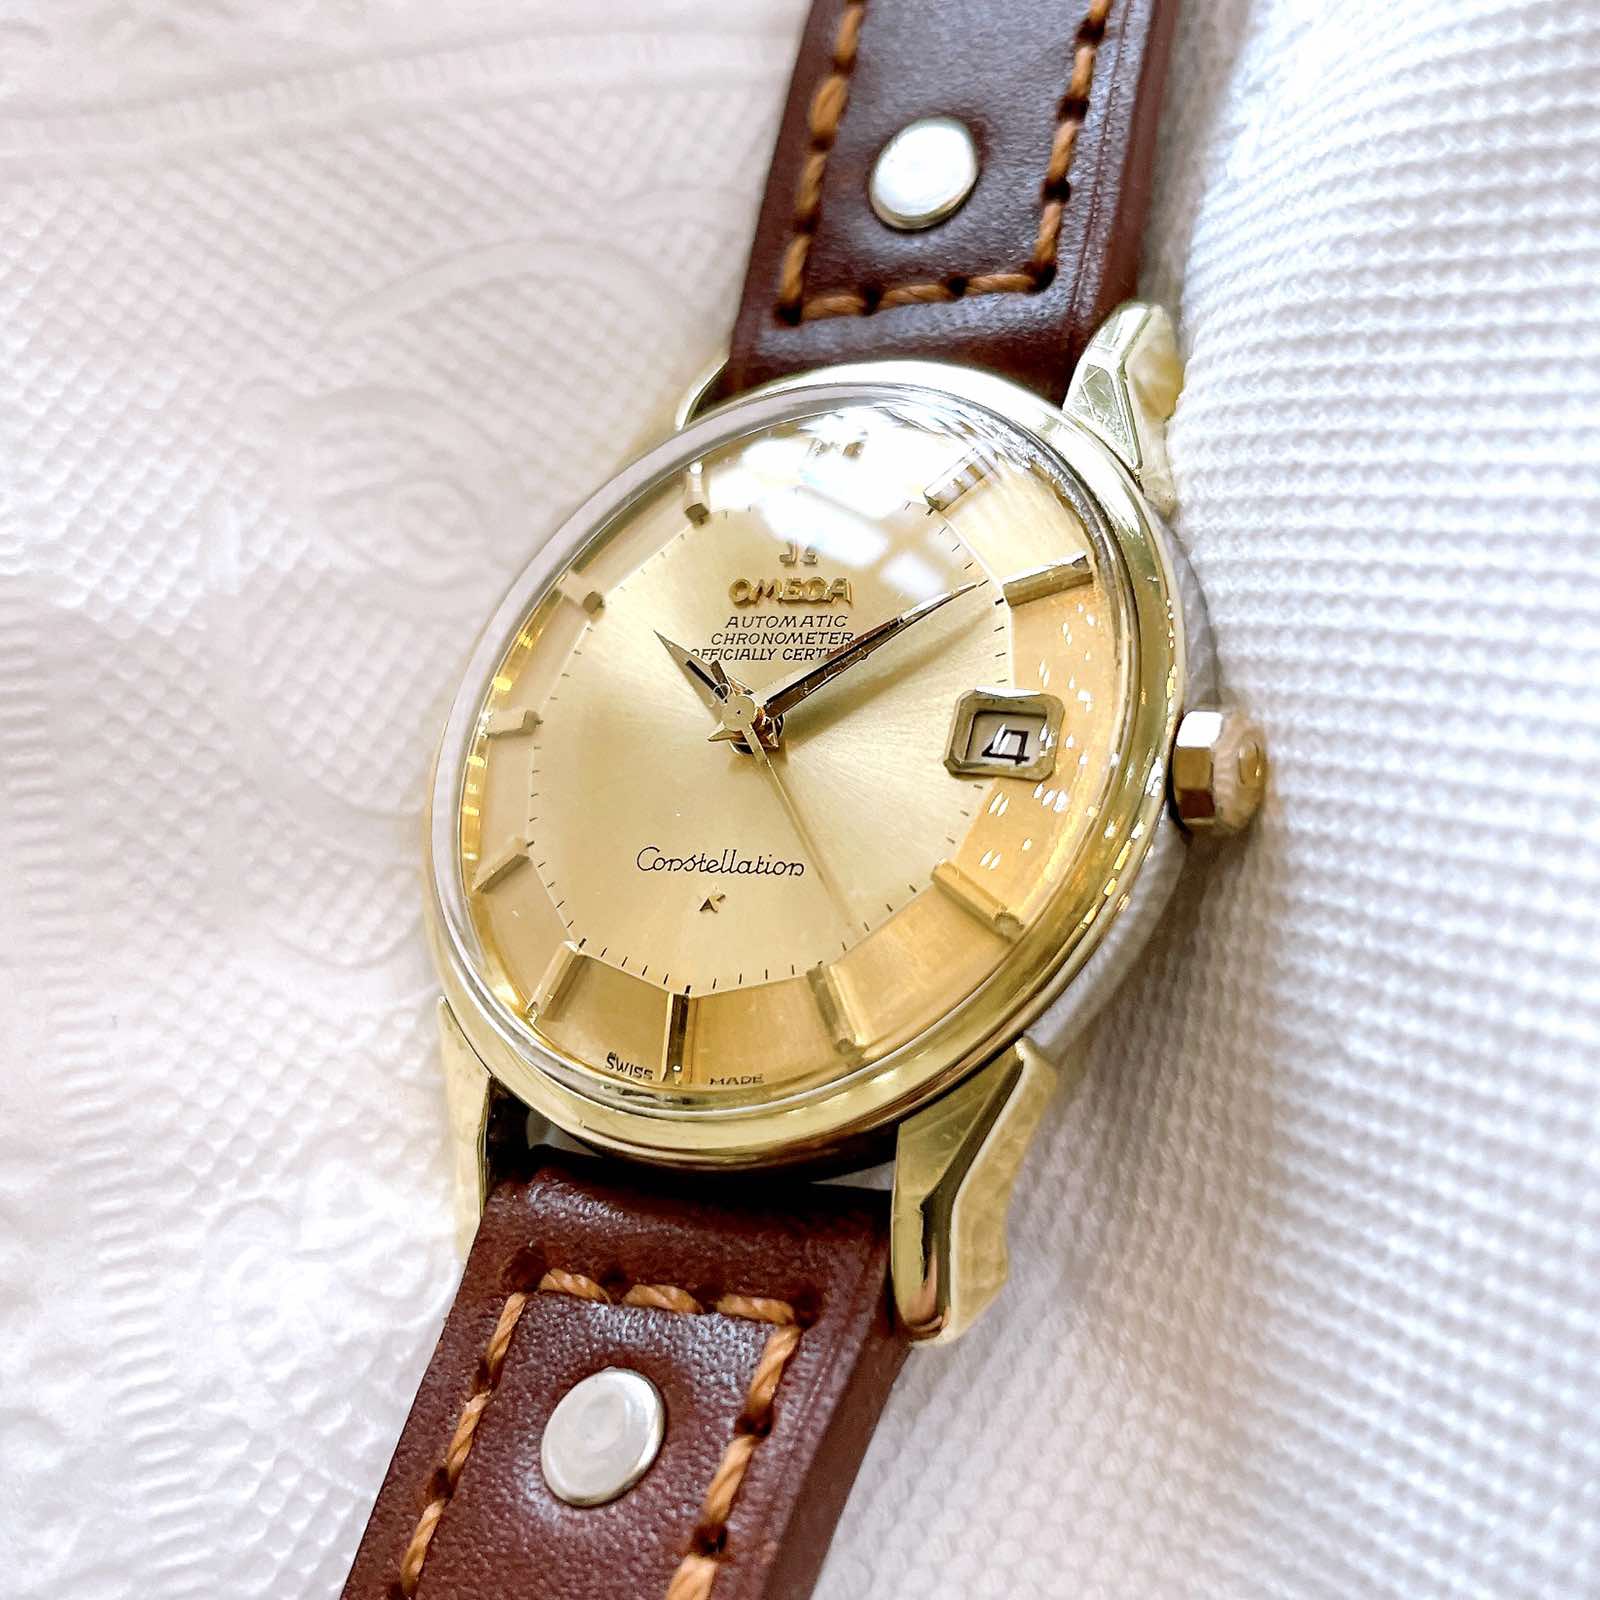 Đồng hồ cổ Omega Automatic Bát Quái Dmi chính hãng Thụy Sĩ